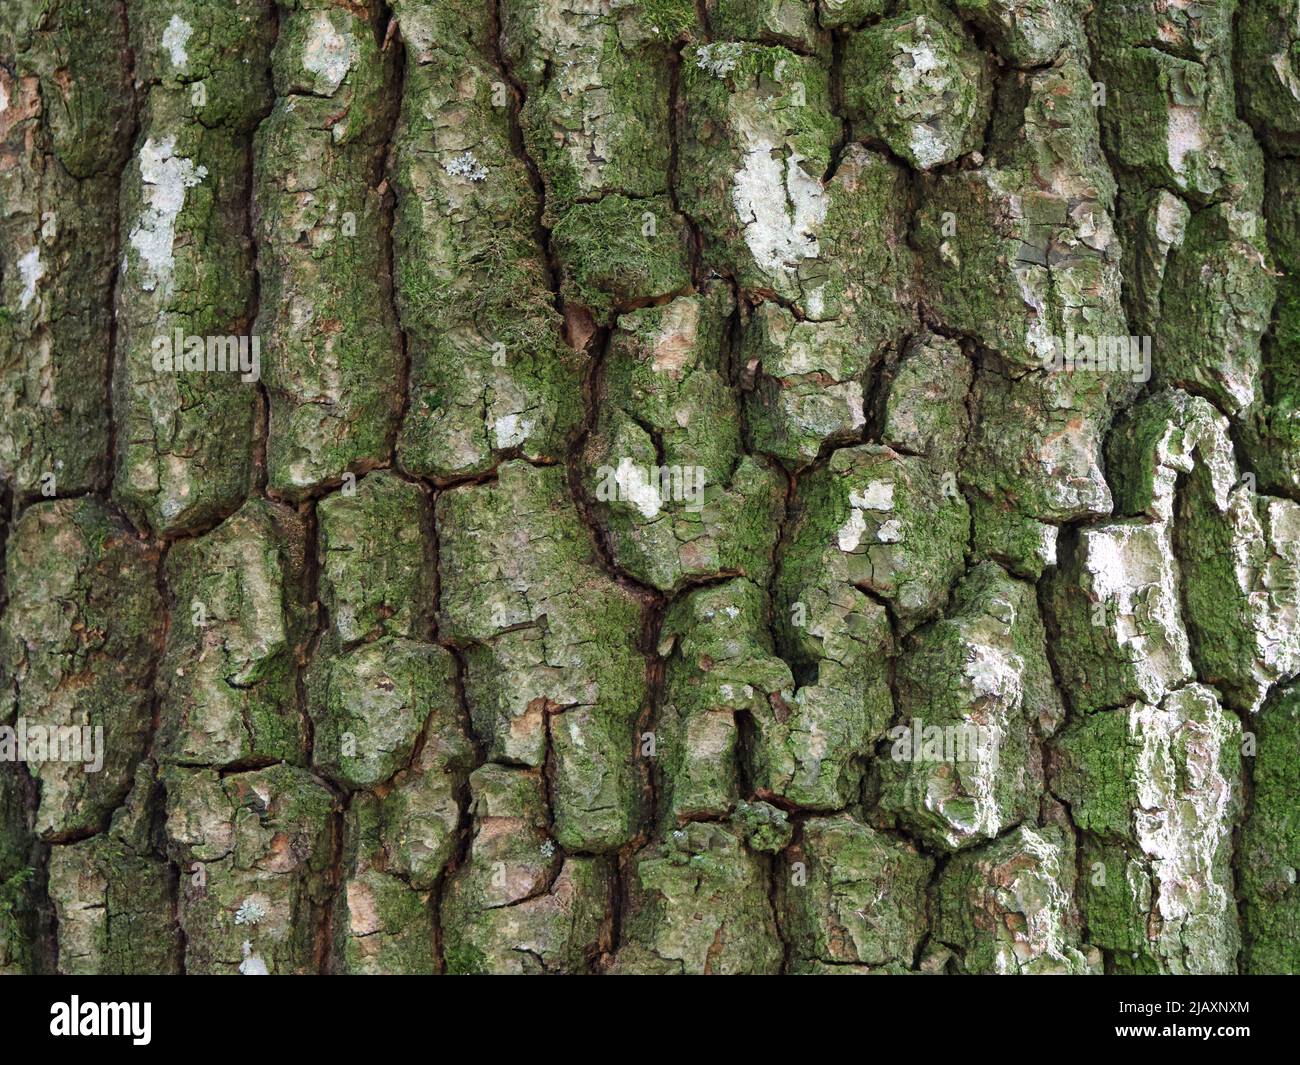 Texture of tree bark, macro photo. Full-frame image of tree bark. Stock Photo